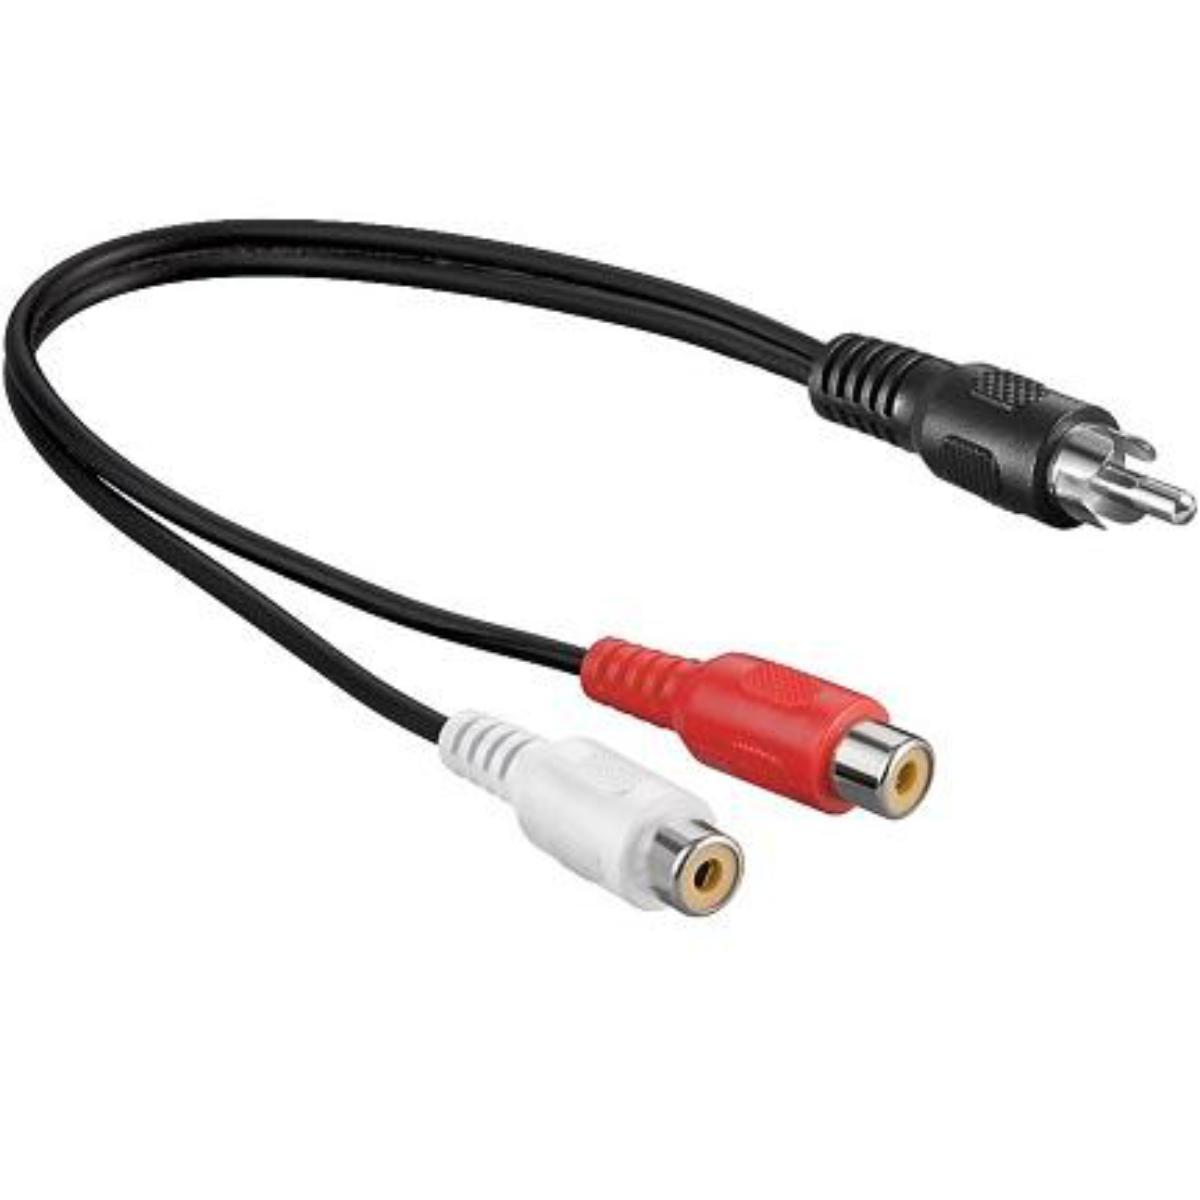 Tulp splitter audio kabel - Allteq